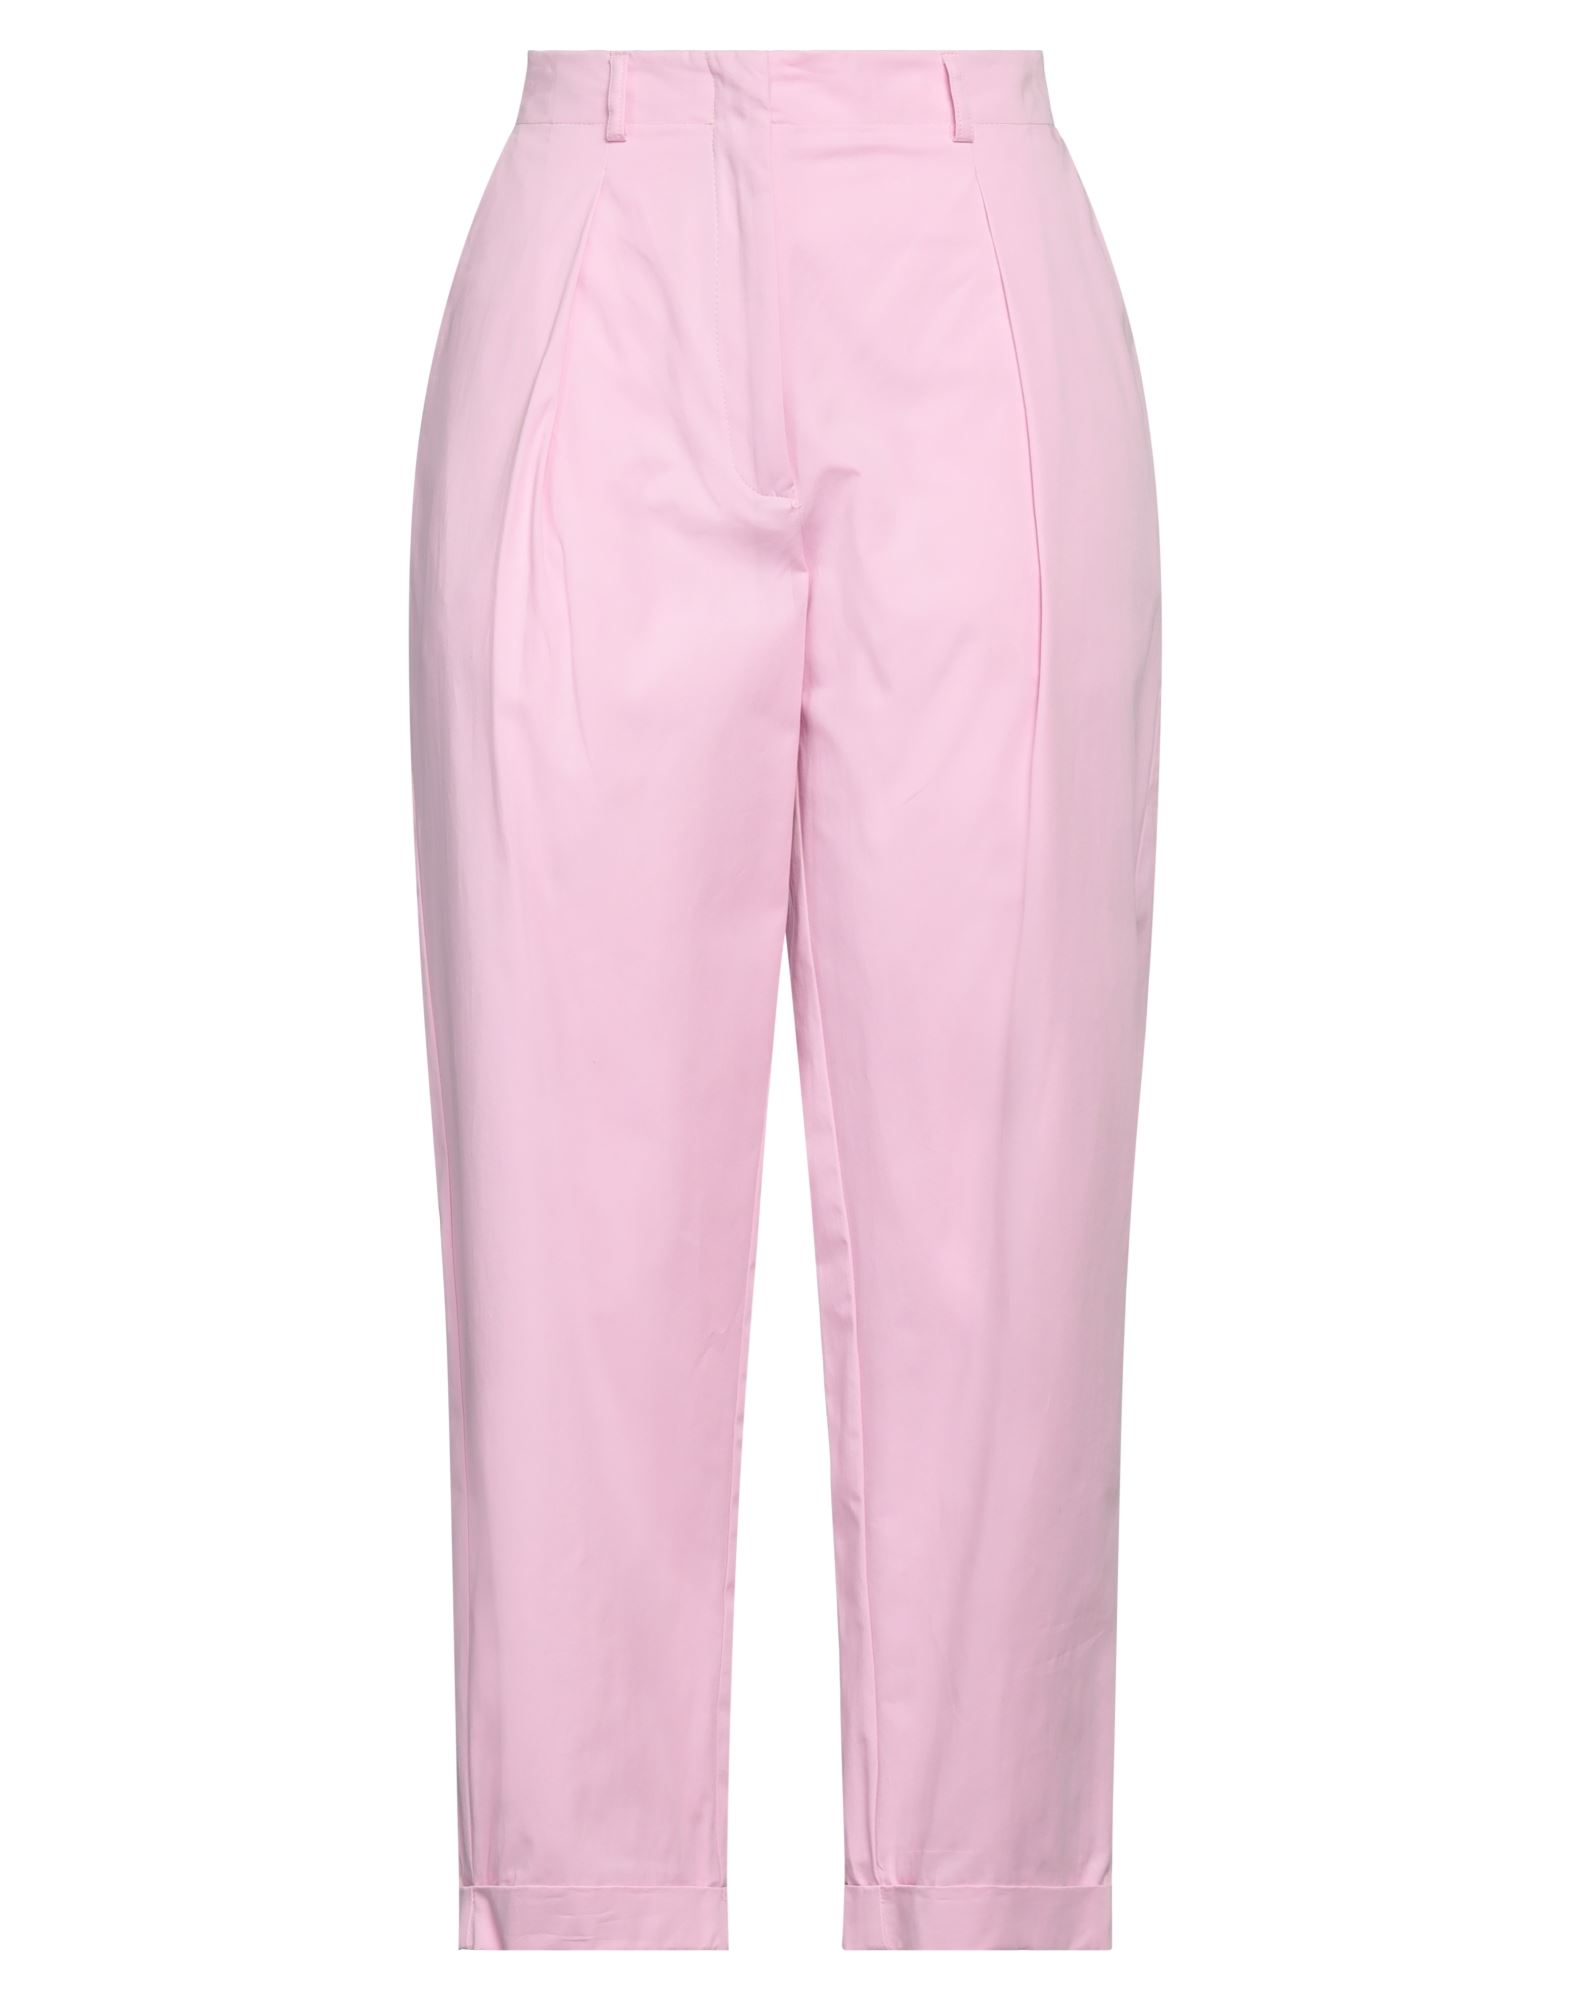 Ottod'ame Woman Pants Pink Size 6 Cotton